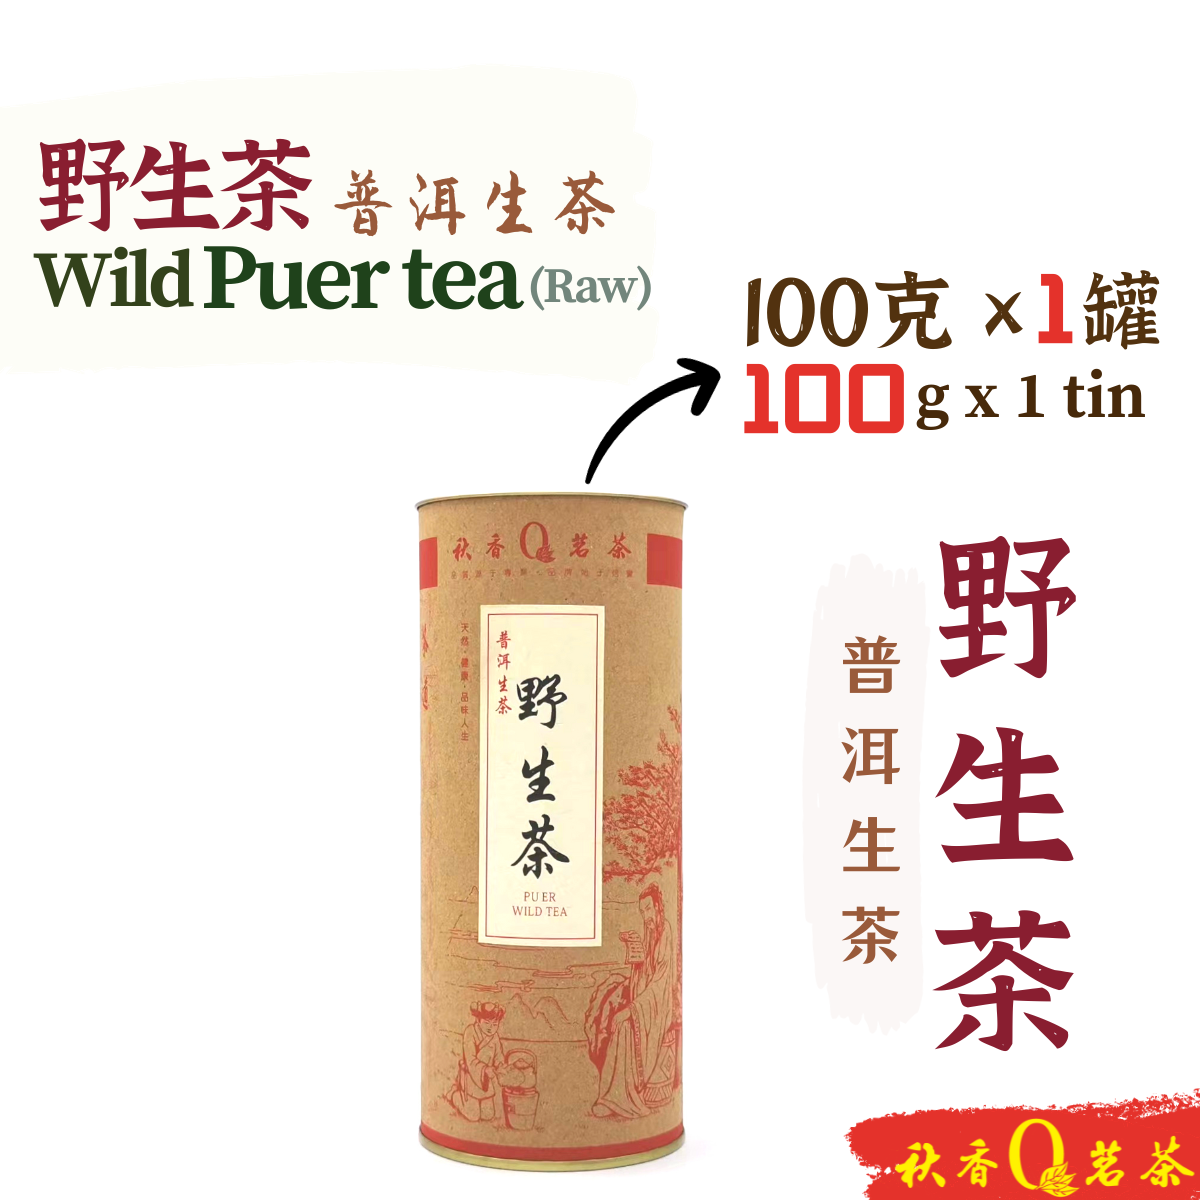 野生茶 Wild Puer Tea 【100g】 | 【普洱生茶 Raw Puer tea】